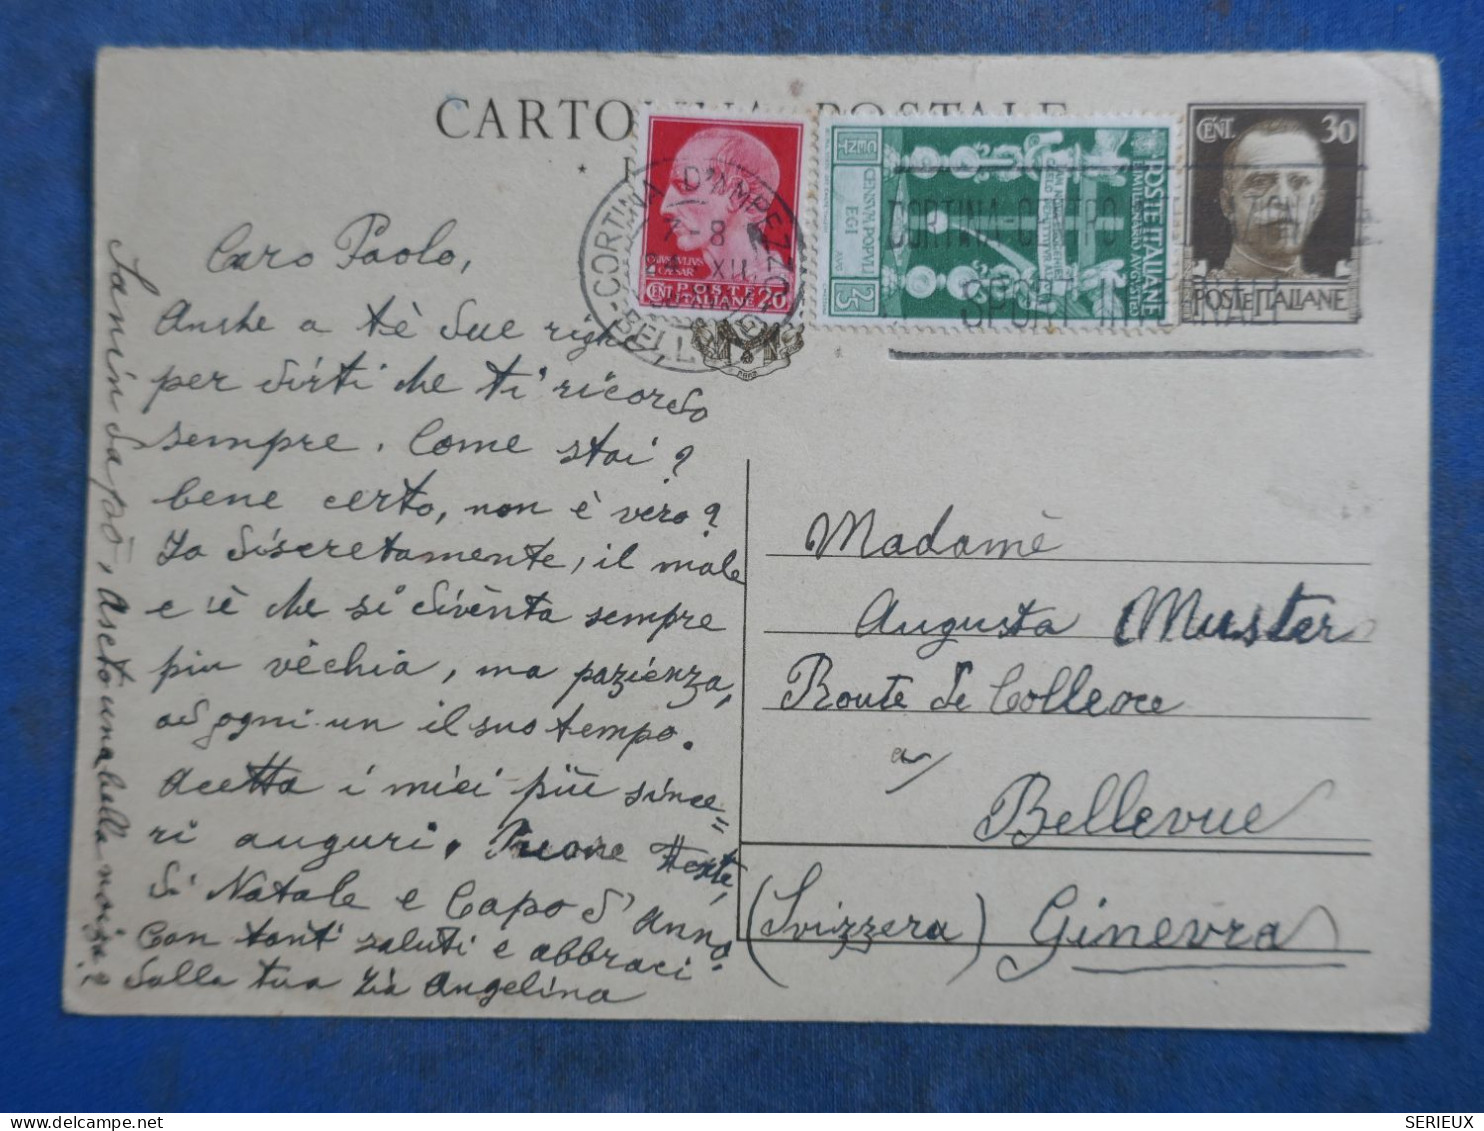 DL3  ITALIA  BELLE CARTE   ENTIER 1938 A  GINEVRA SUISSE   +AFF. INTERESSANT++ - Entiers Postaux